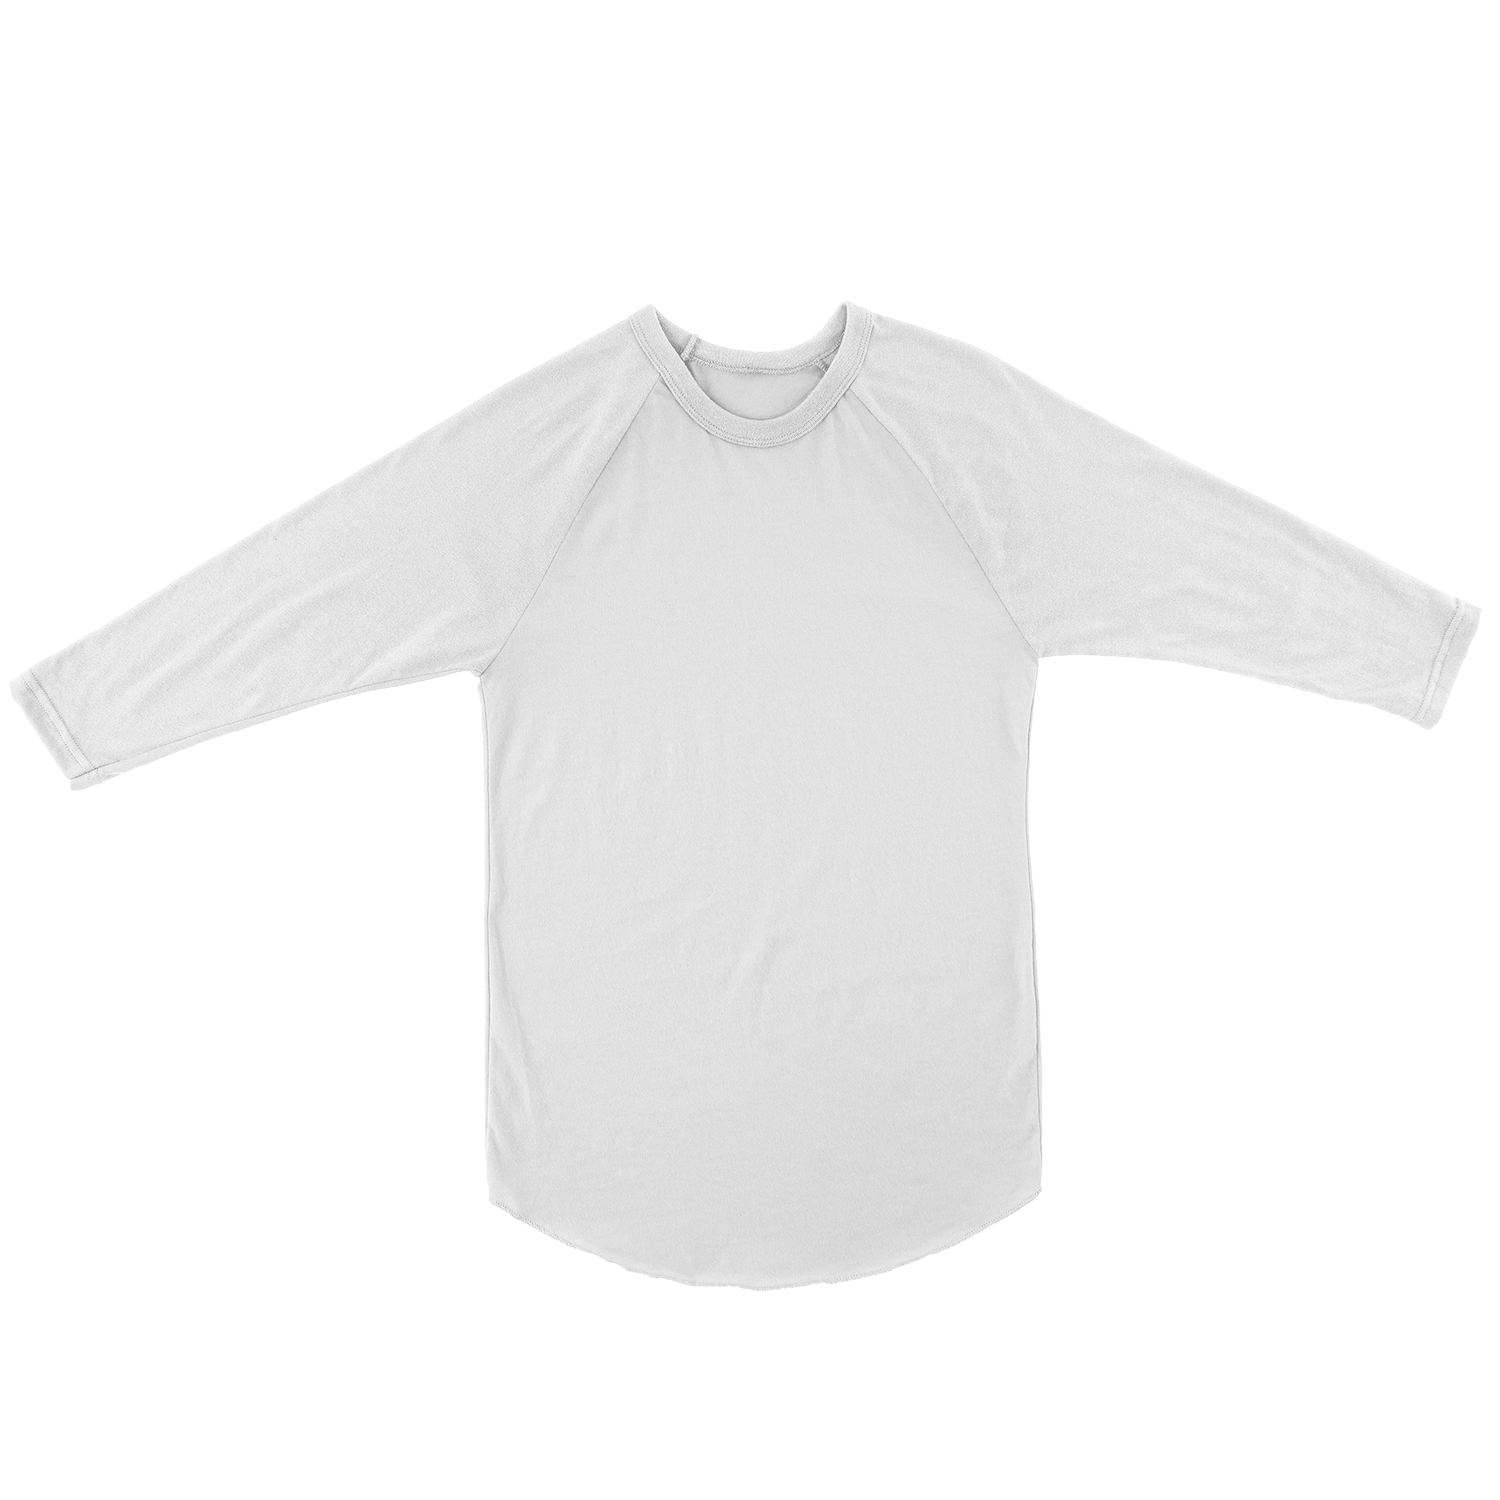 Download 36+ Raglan T Shirt Mockup Free